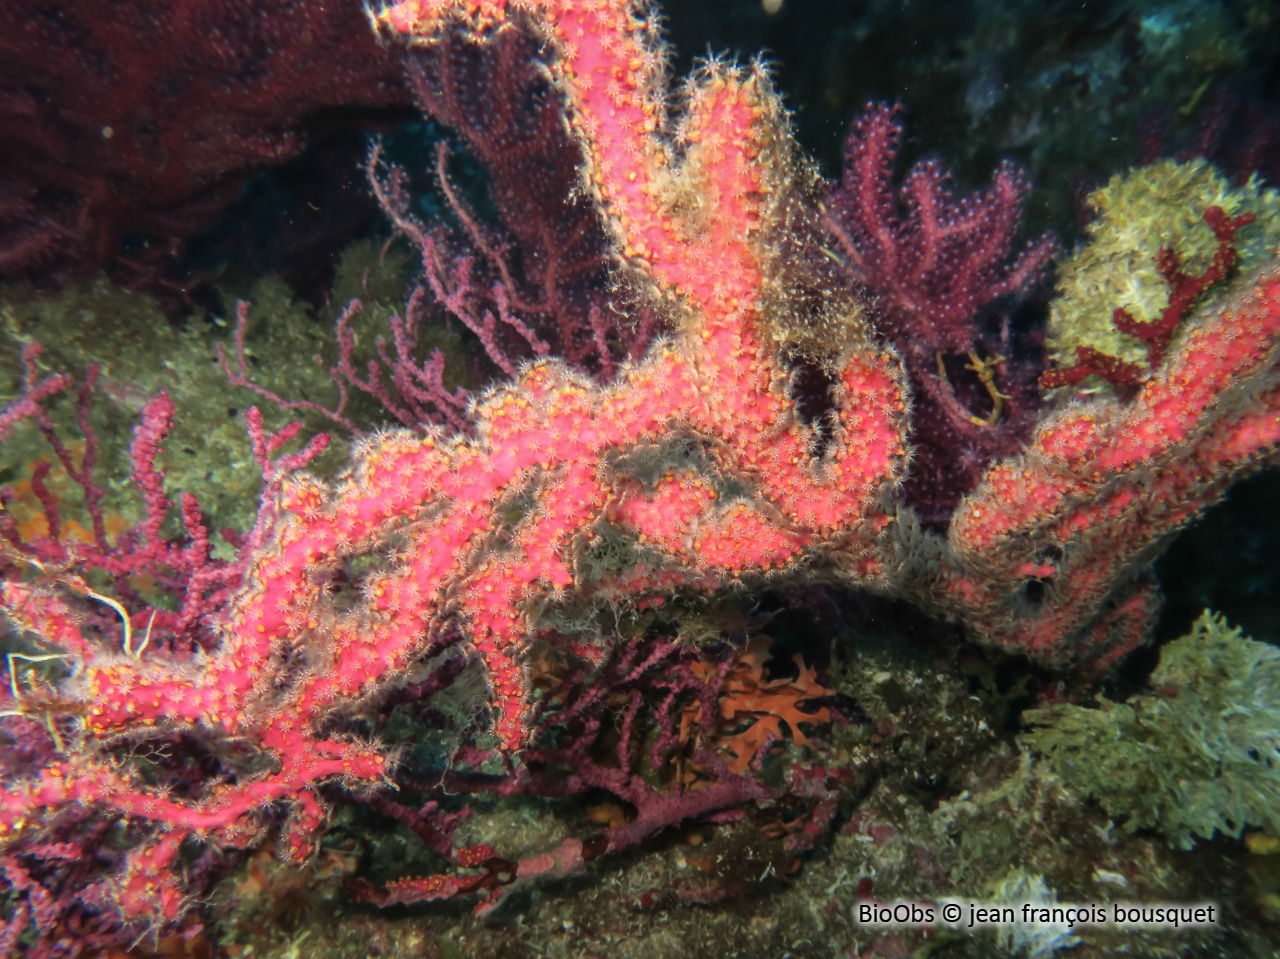 Alcyon encroûtant - Alcyonium coralloides - jean françois bousquet - BioObs